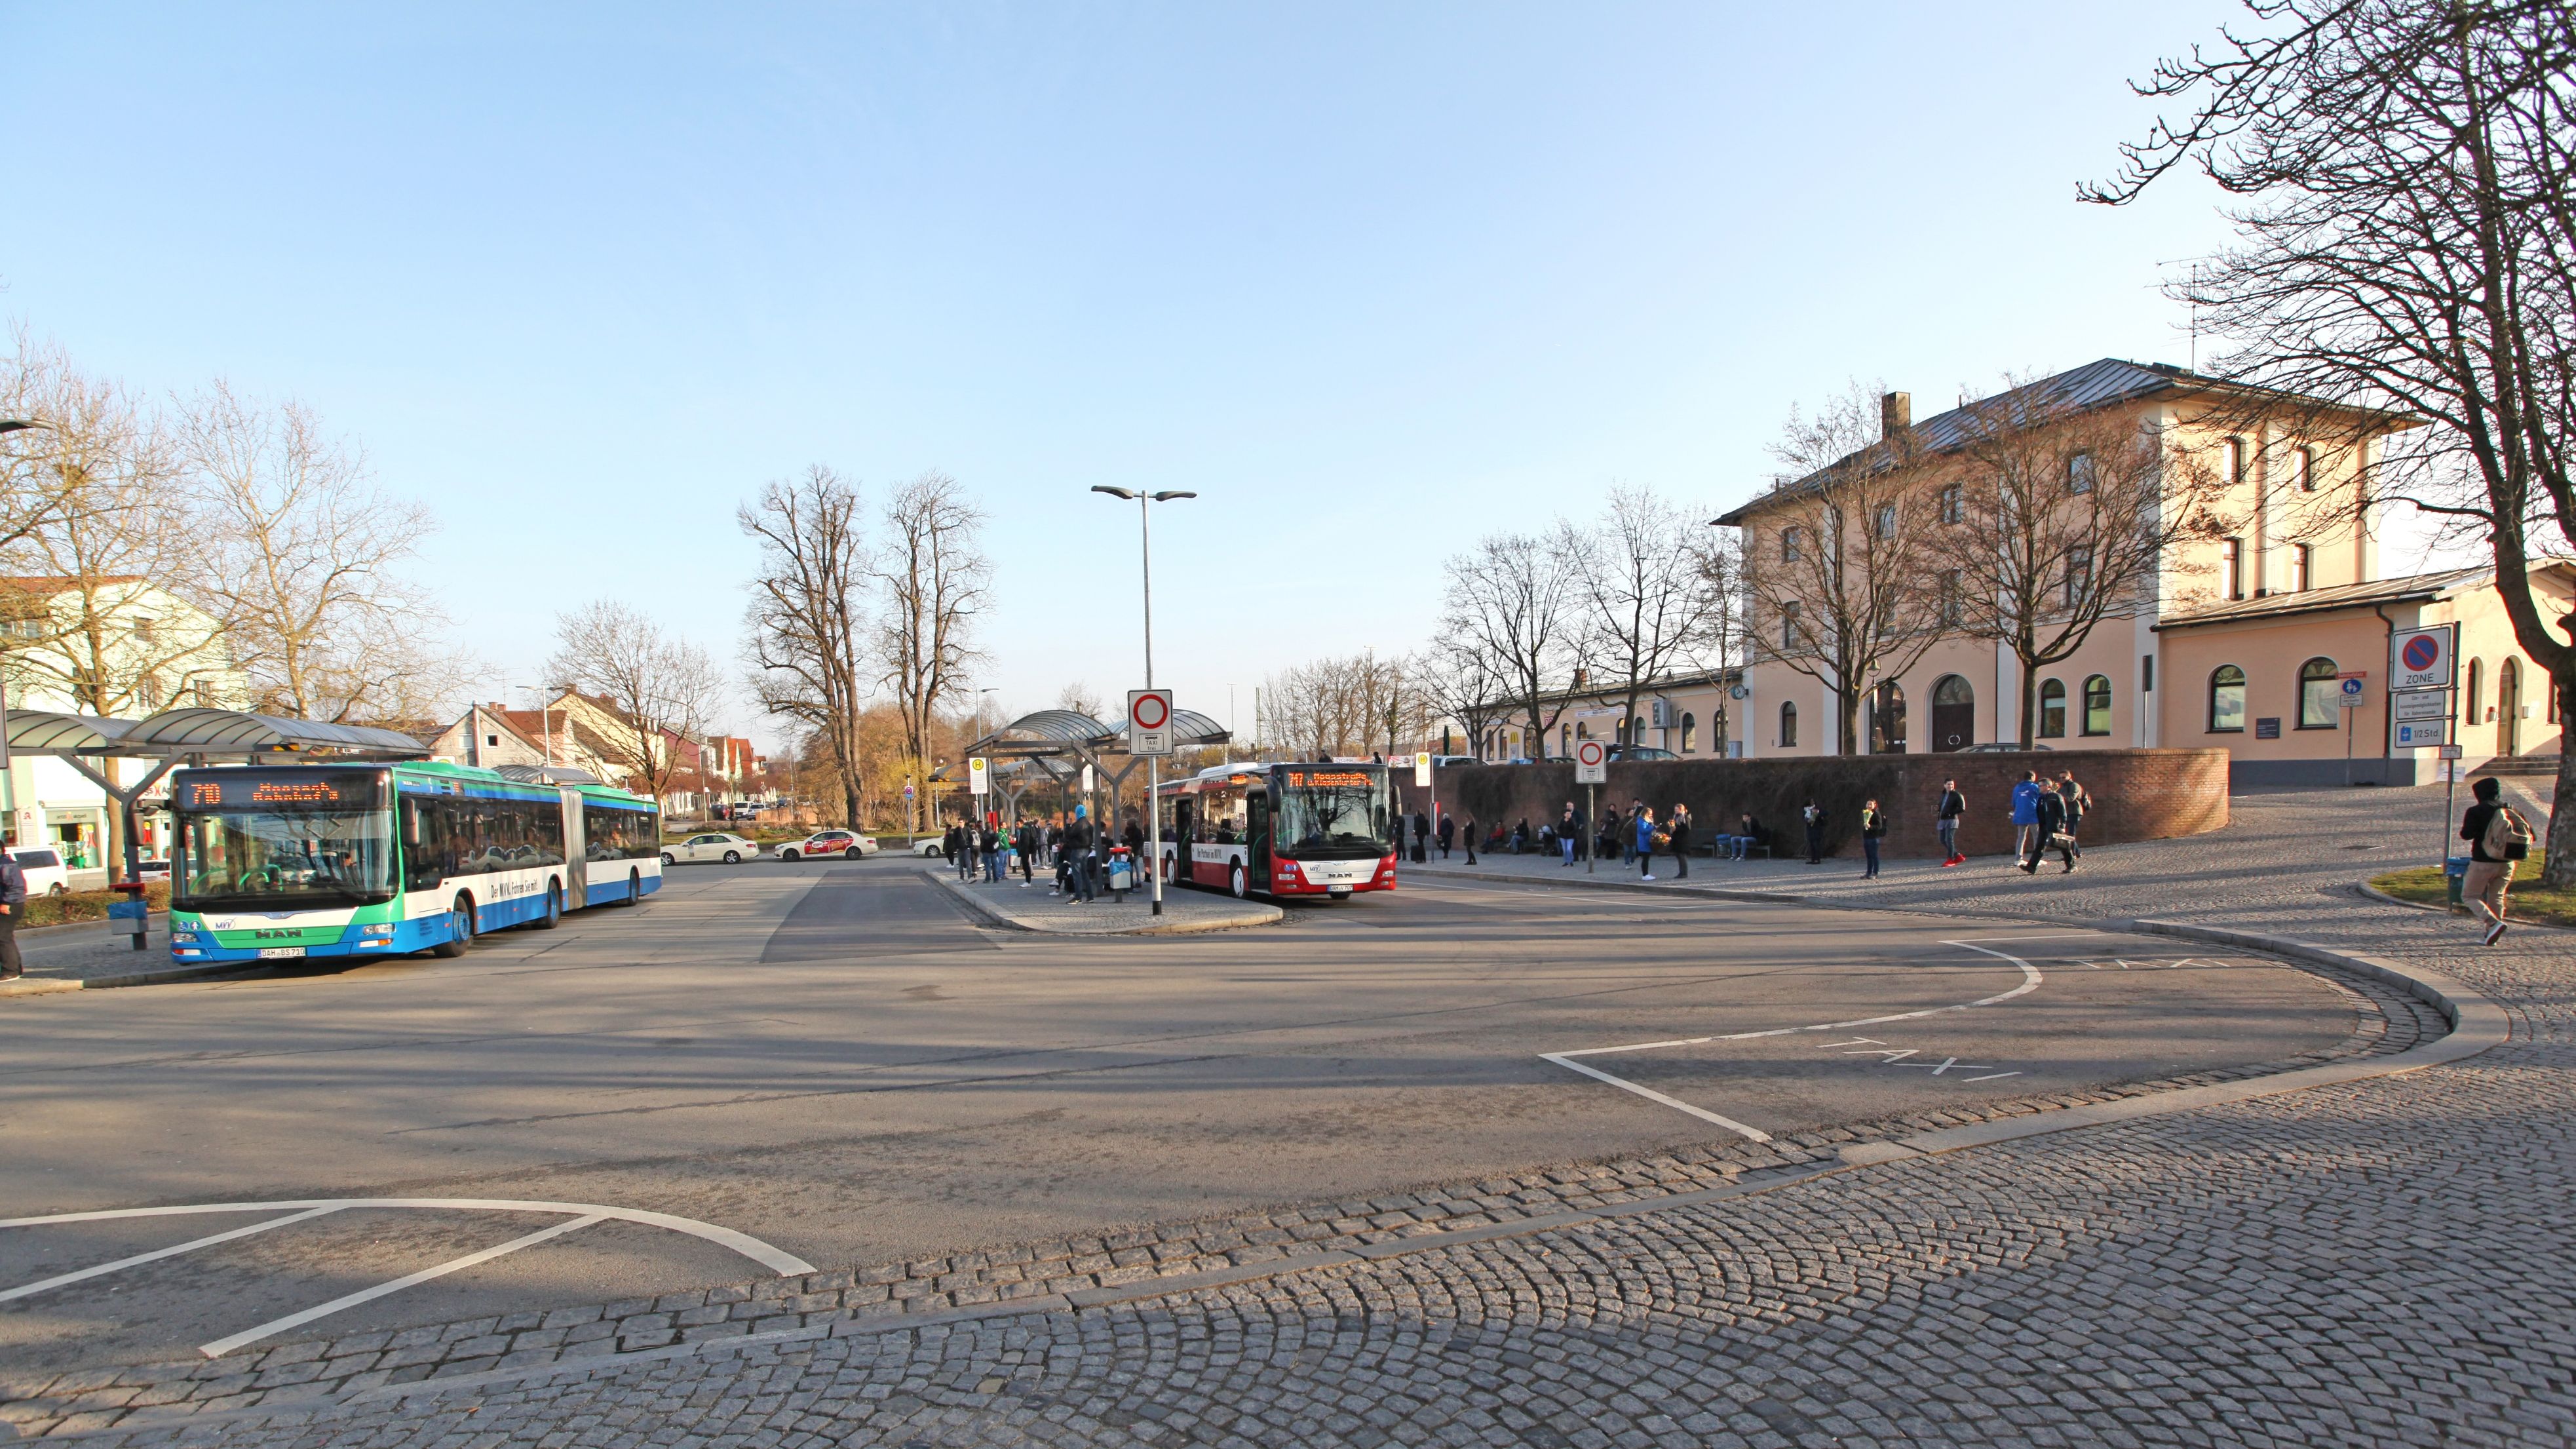 Bahnhofsvorplatz mit Busbahnhof und dem Bahnhofsgebäude im Hintergrund